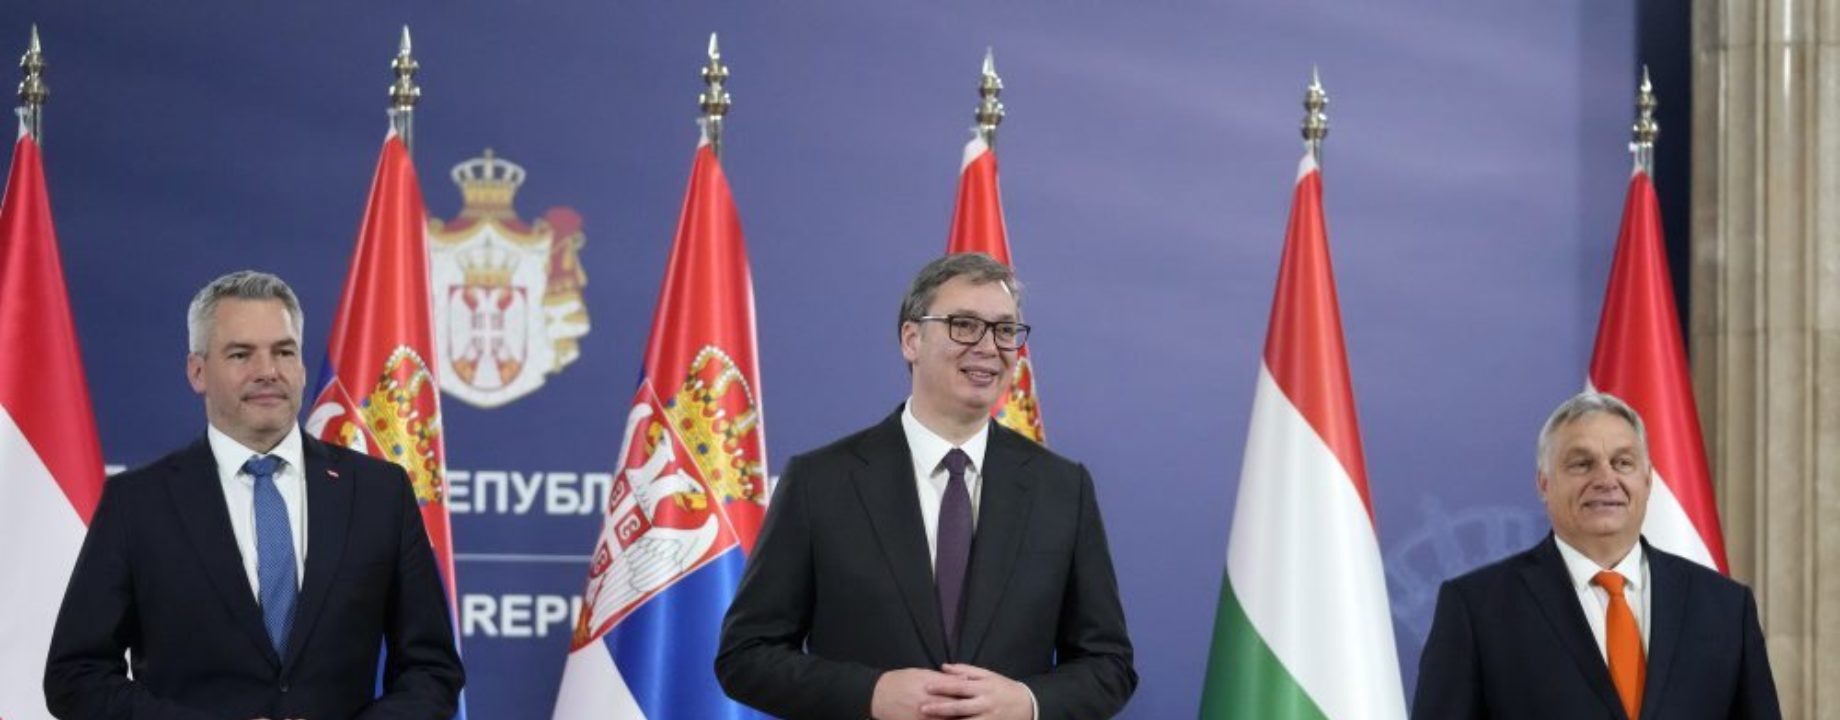 Serbia Hungary Austria867954916127